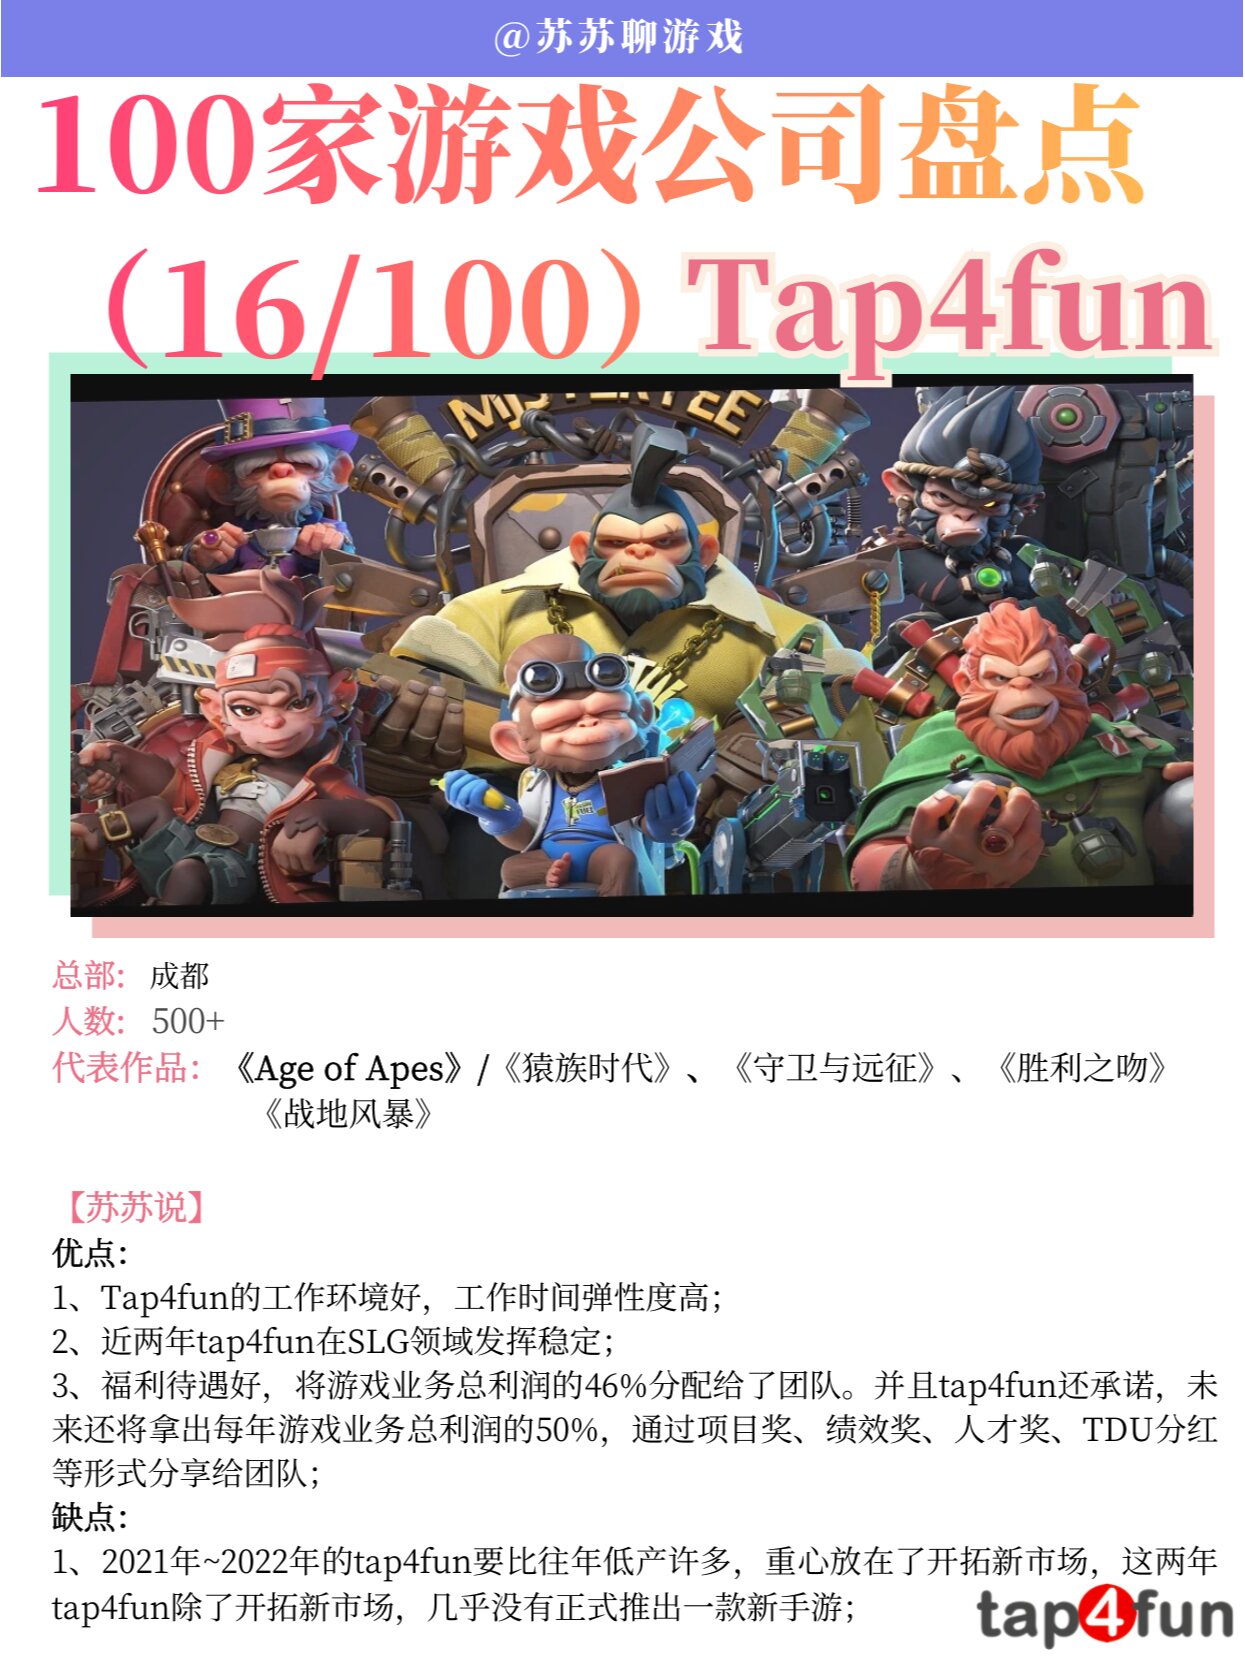 Tap4fun | 100家游戏公司盘点（31/100）